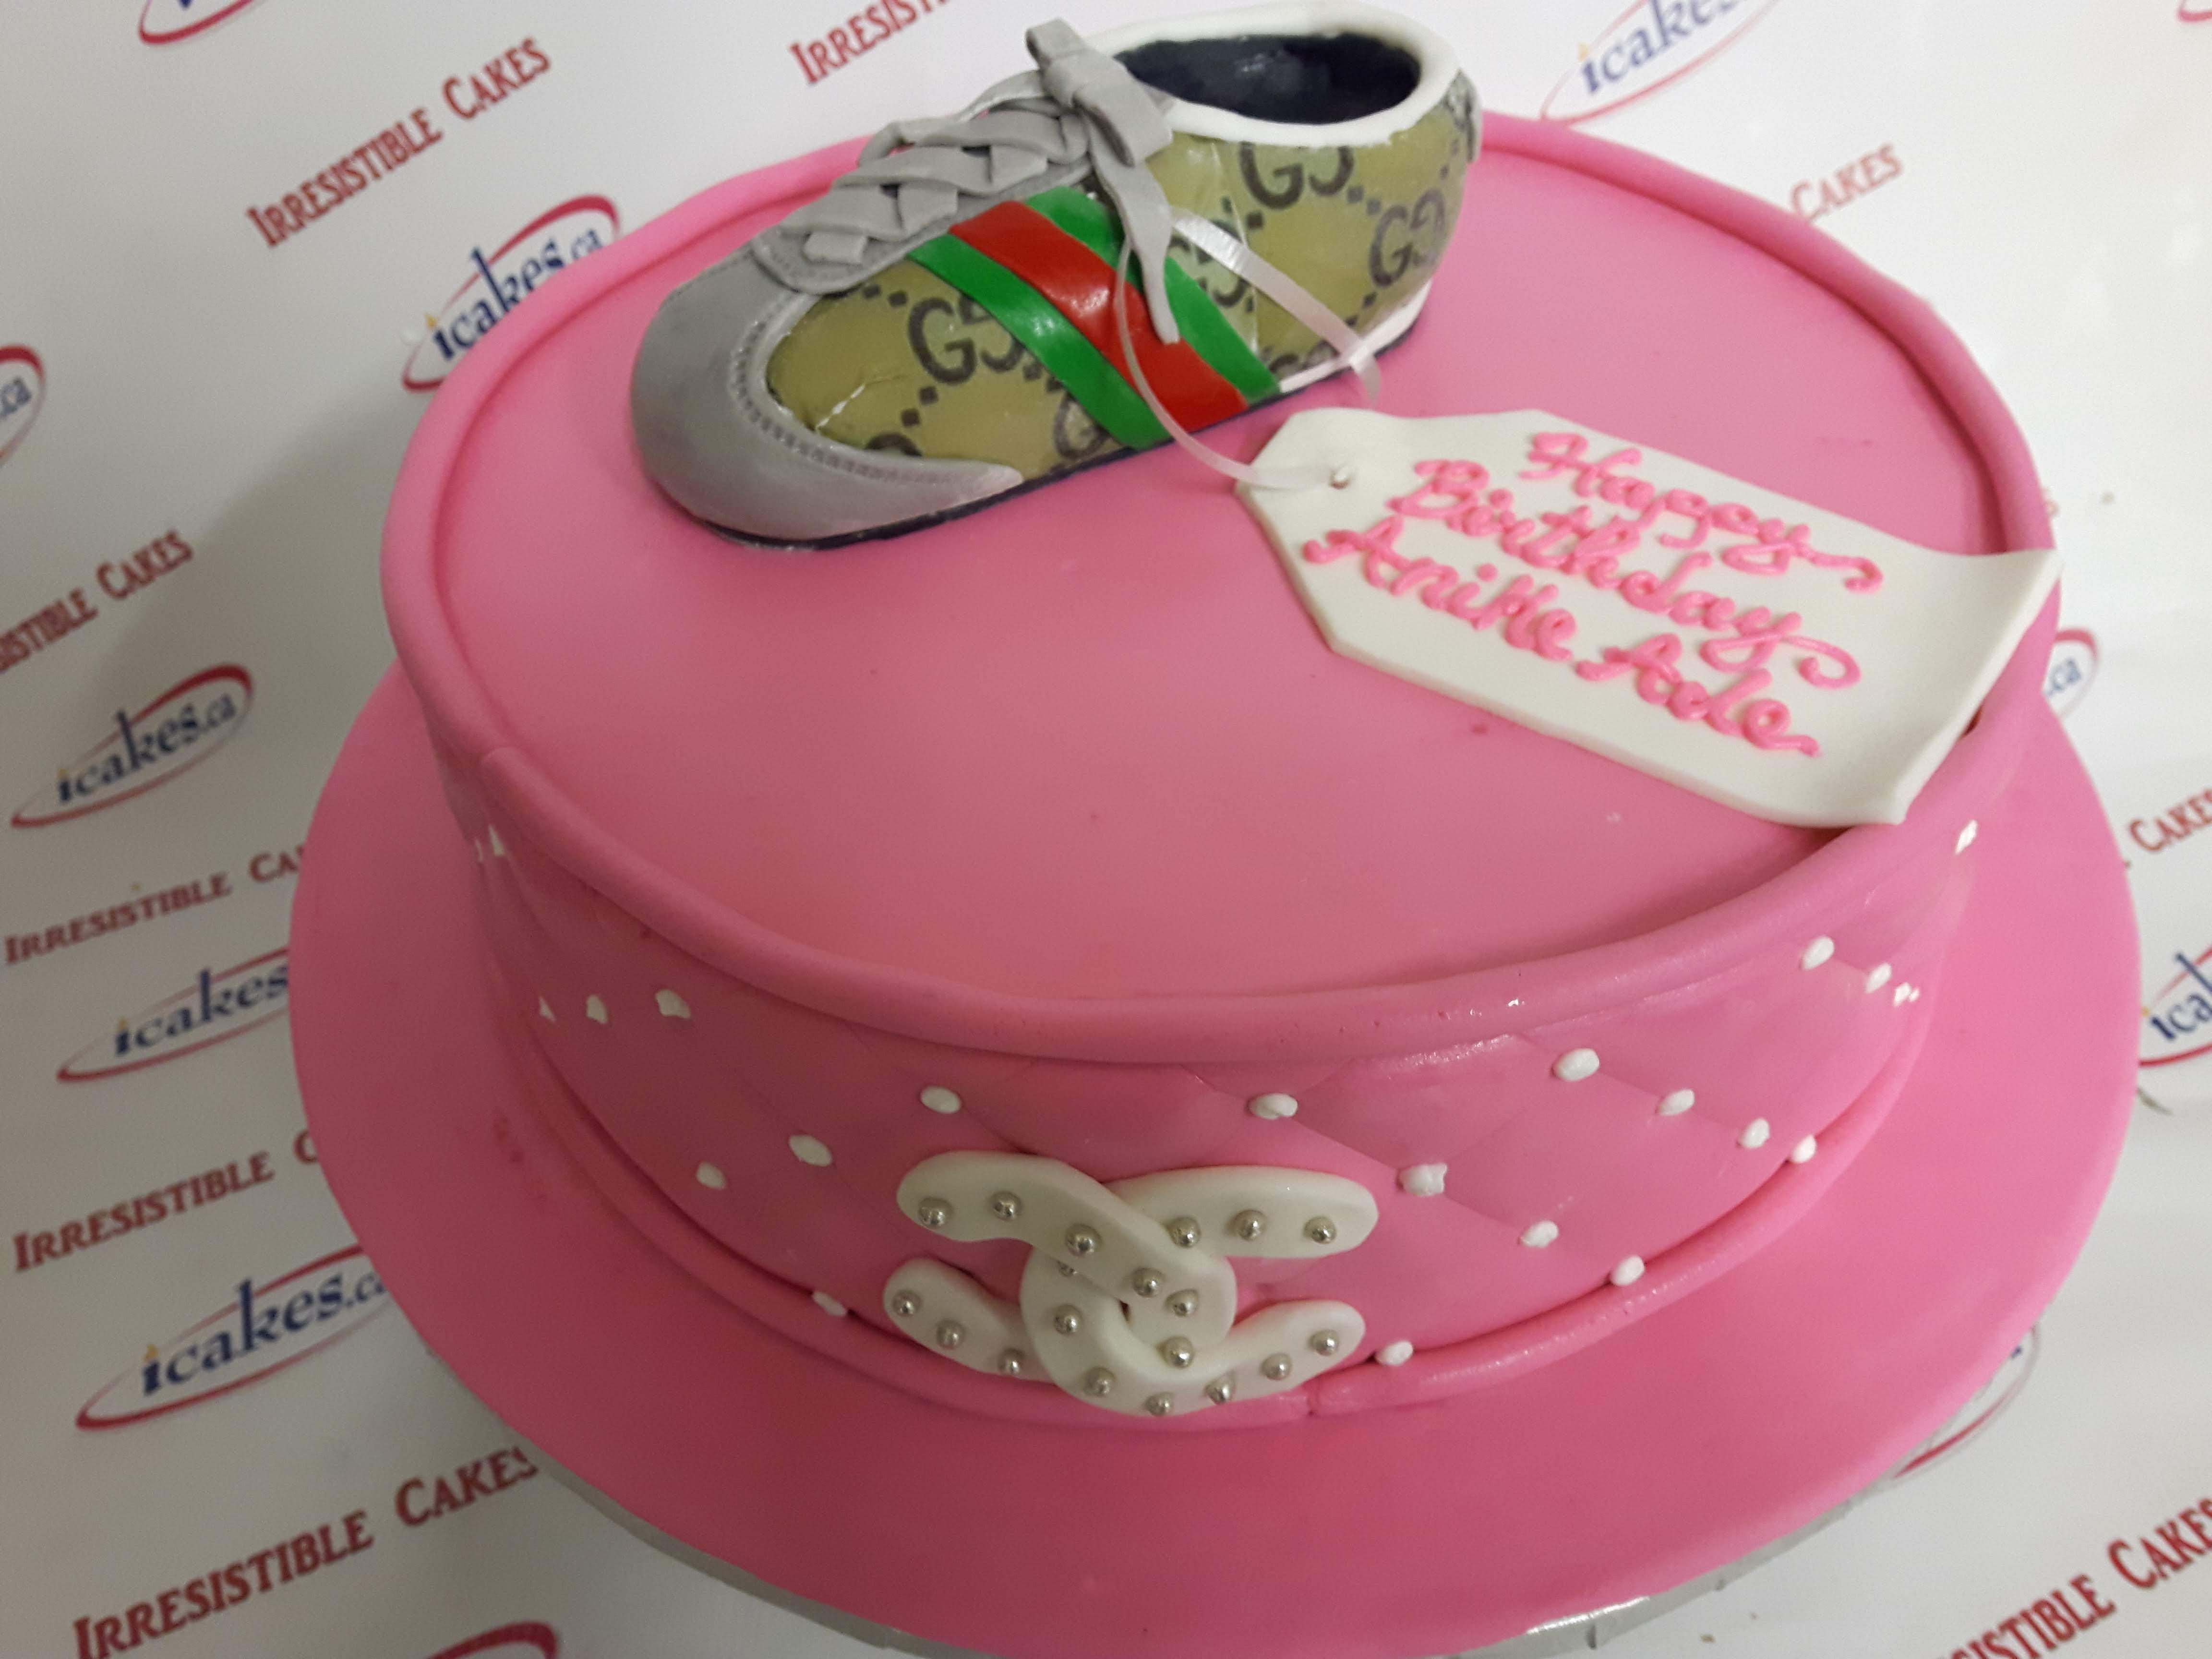 Louboutin Themed Shoe Box Cake - Decorated Cake by Sam - CakesDecor